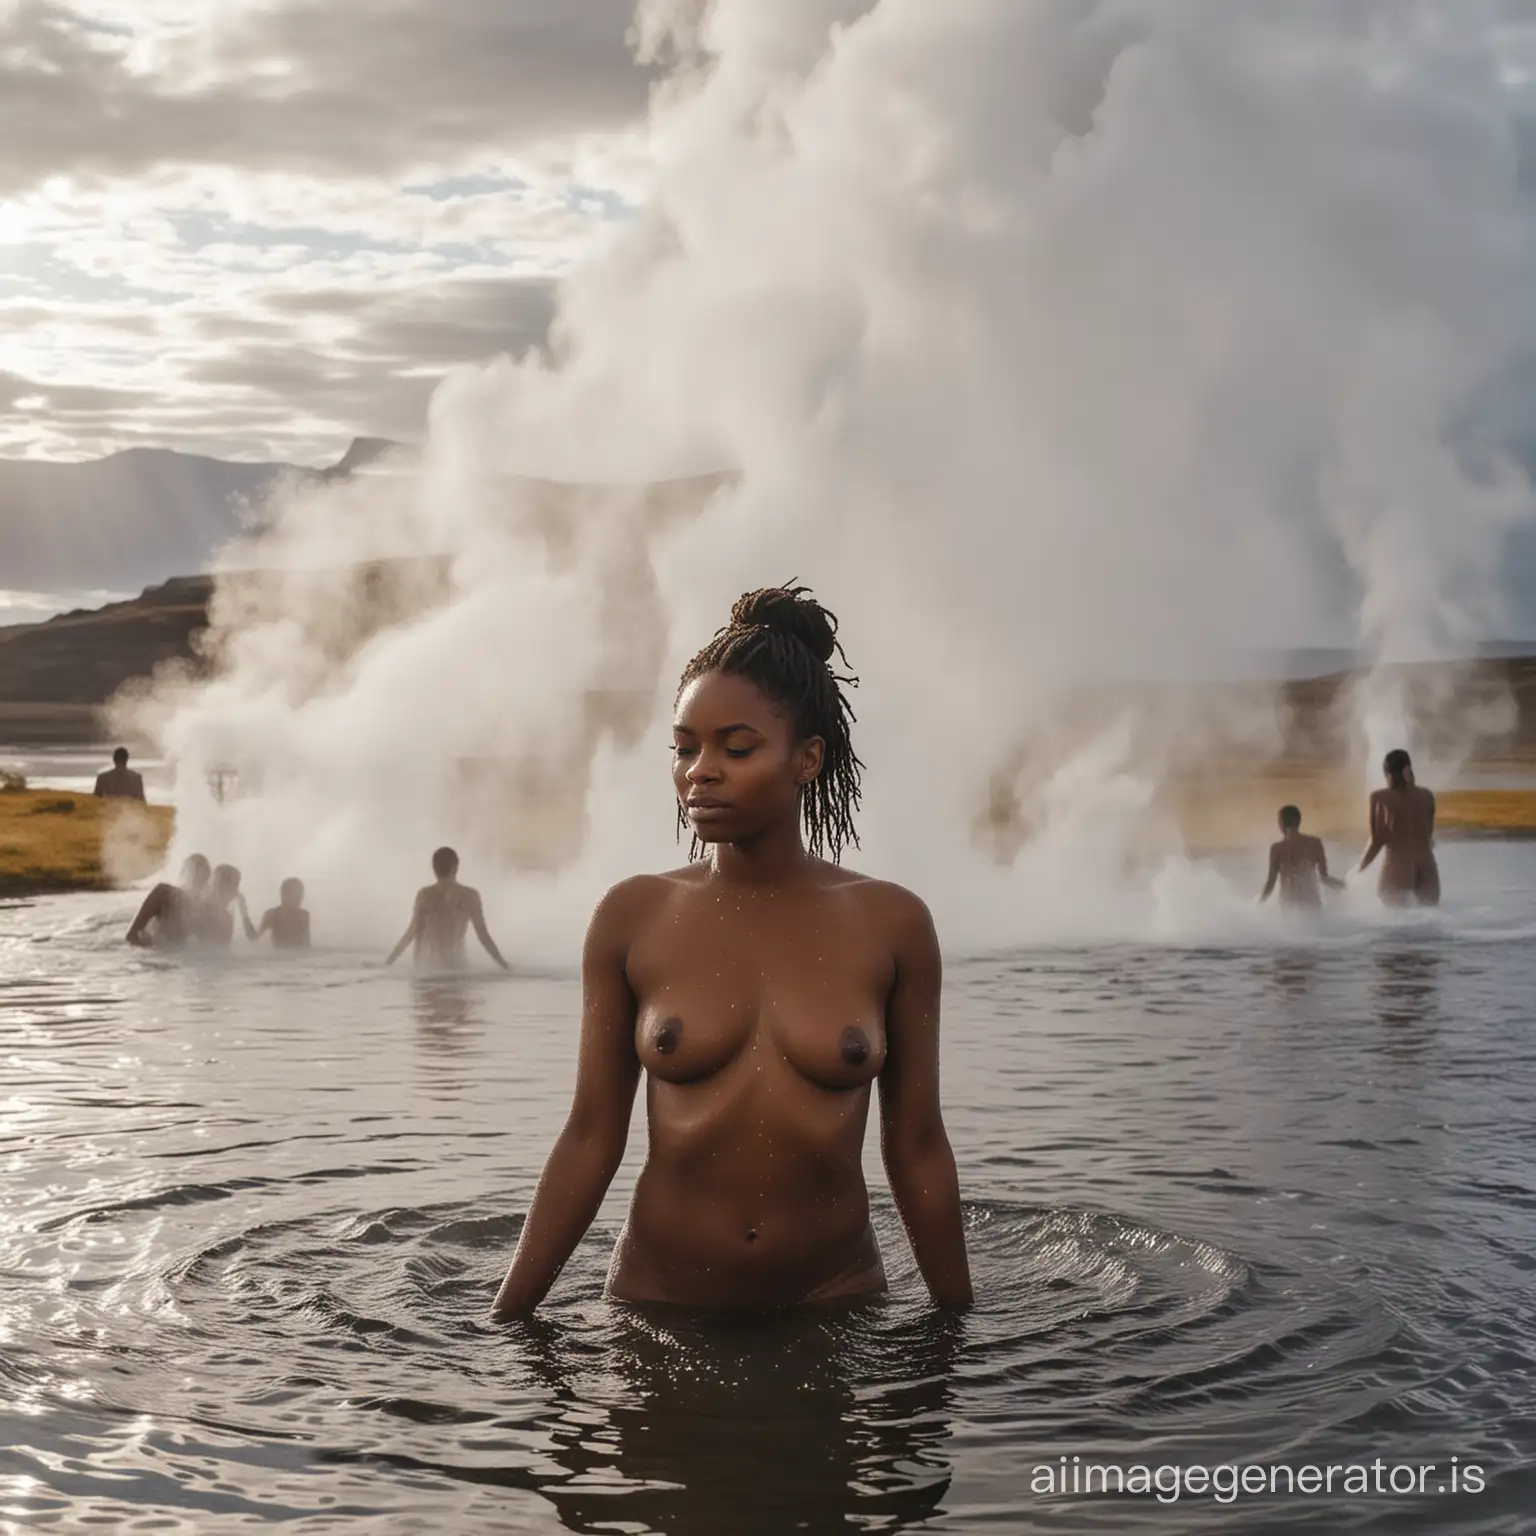 femmes africaines se baignant nues dans un lac d'eau chaudes en islande, vapeur d'eau chaude